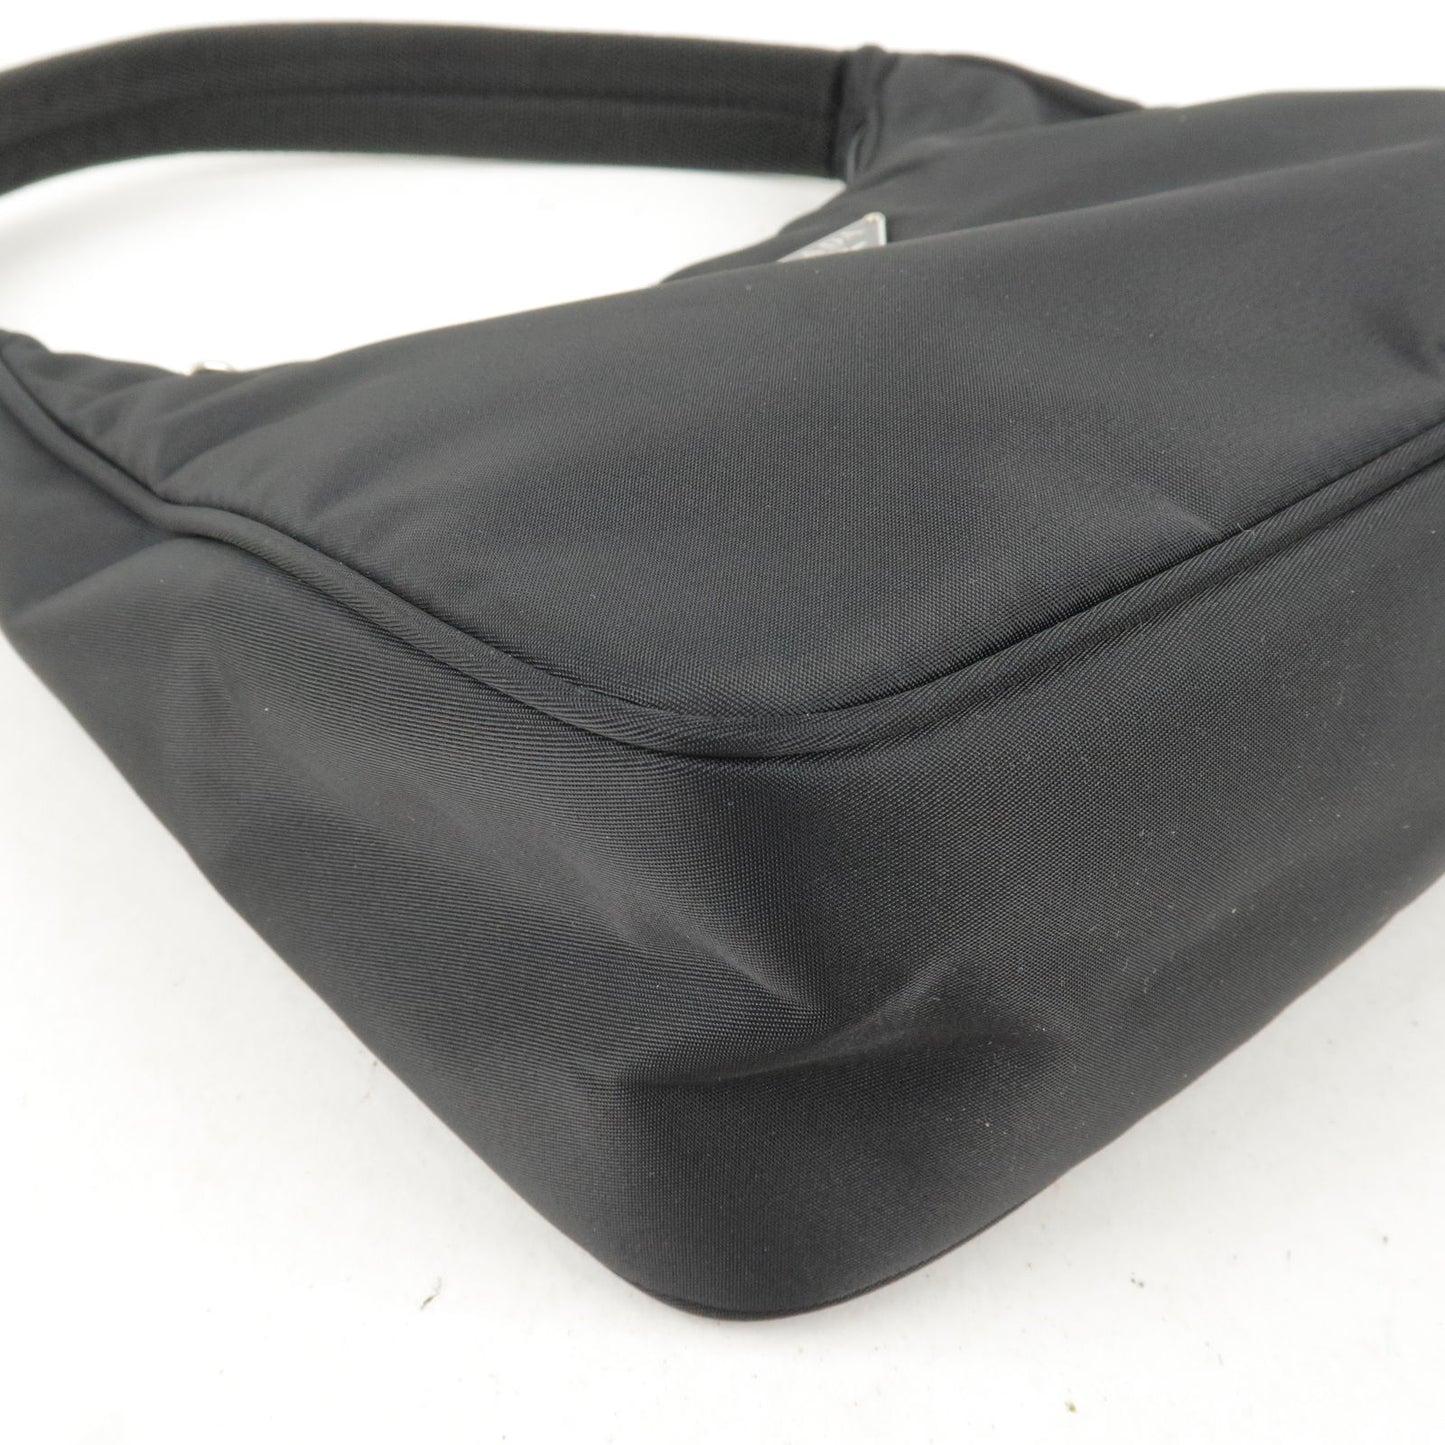 PRADA Logo Nylon Hand Bag Mini Bag NERO Black MV519